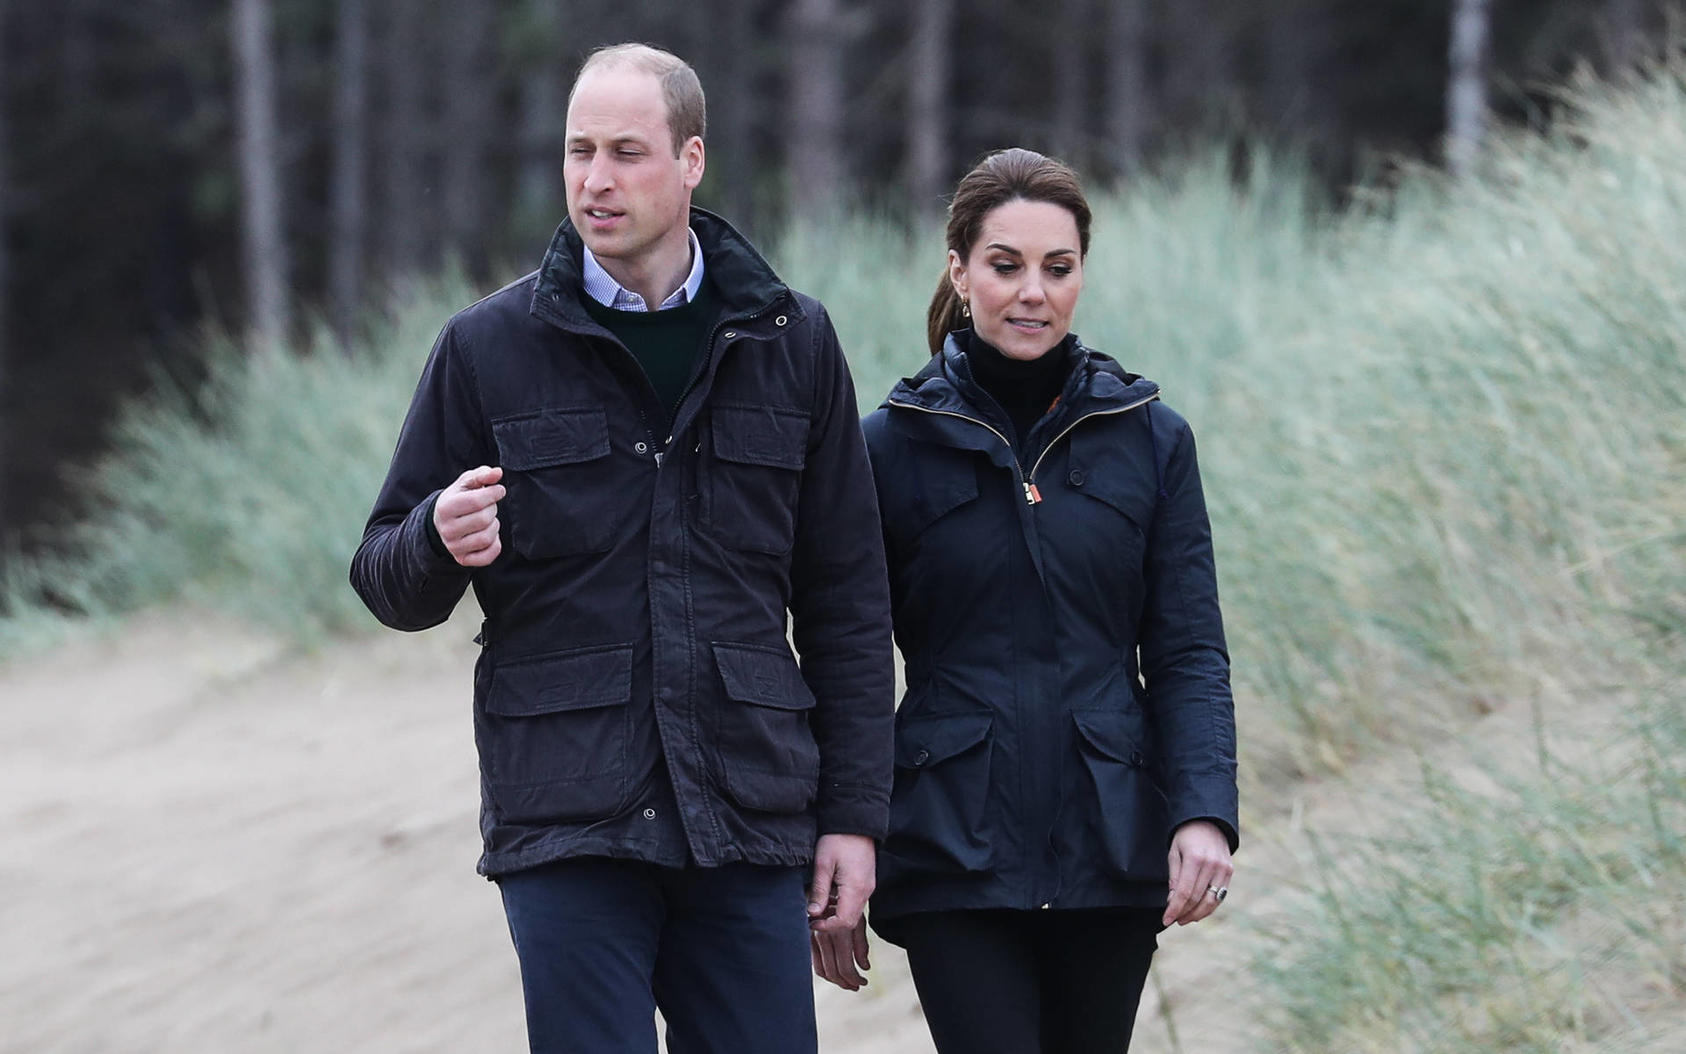 Drama um William und Kate: Königliche Kolonne verletzt Fußgängerin